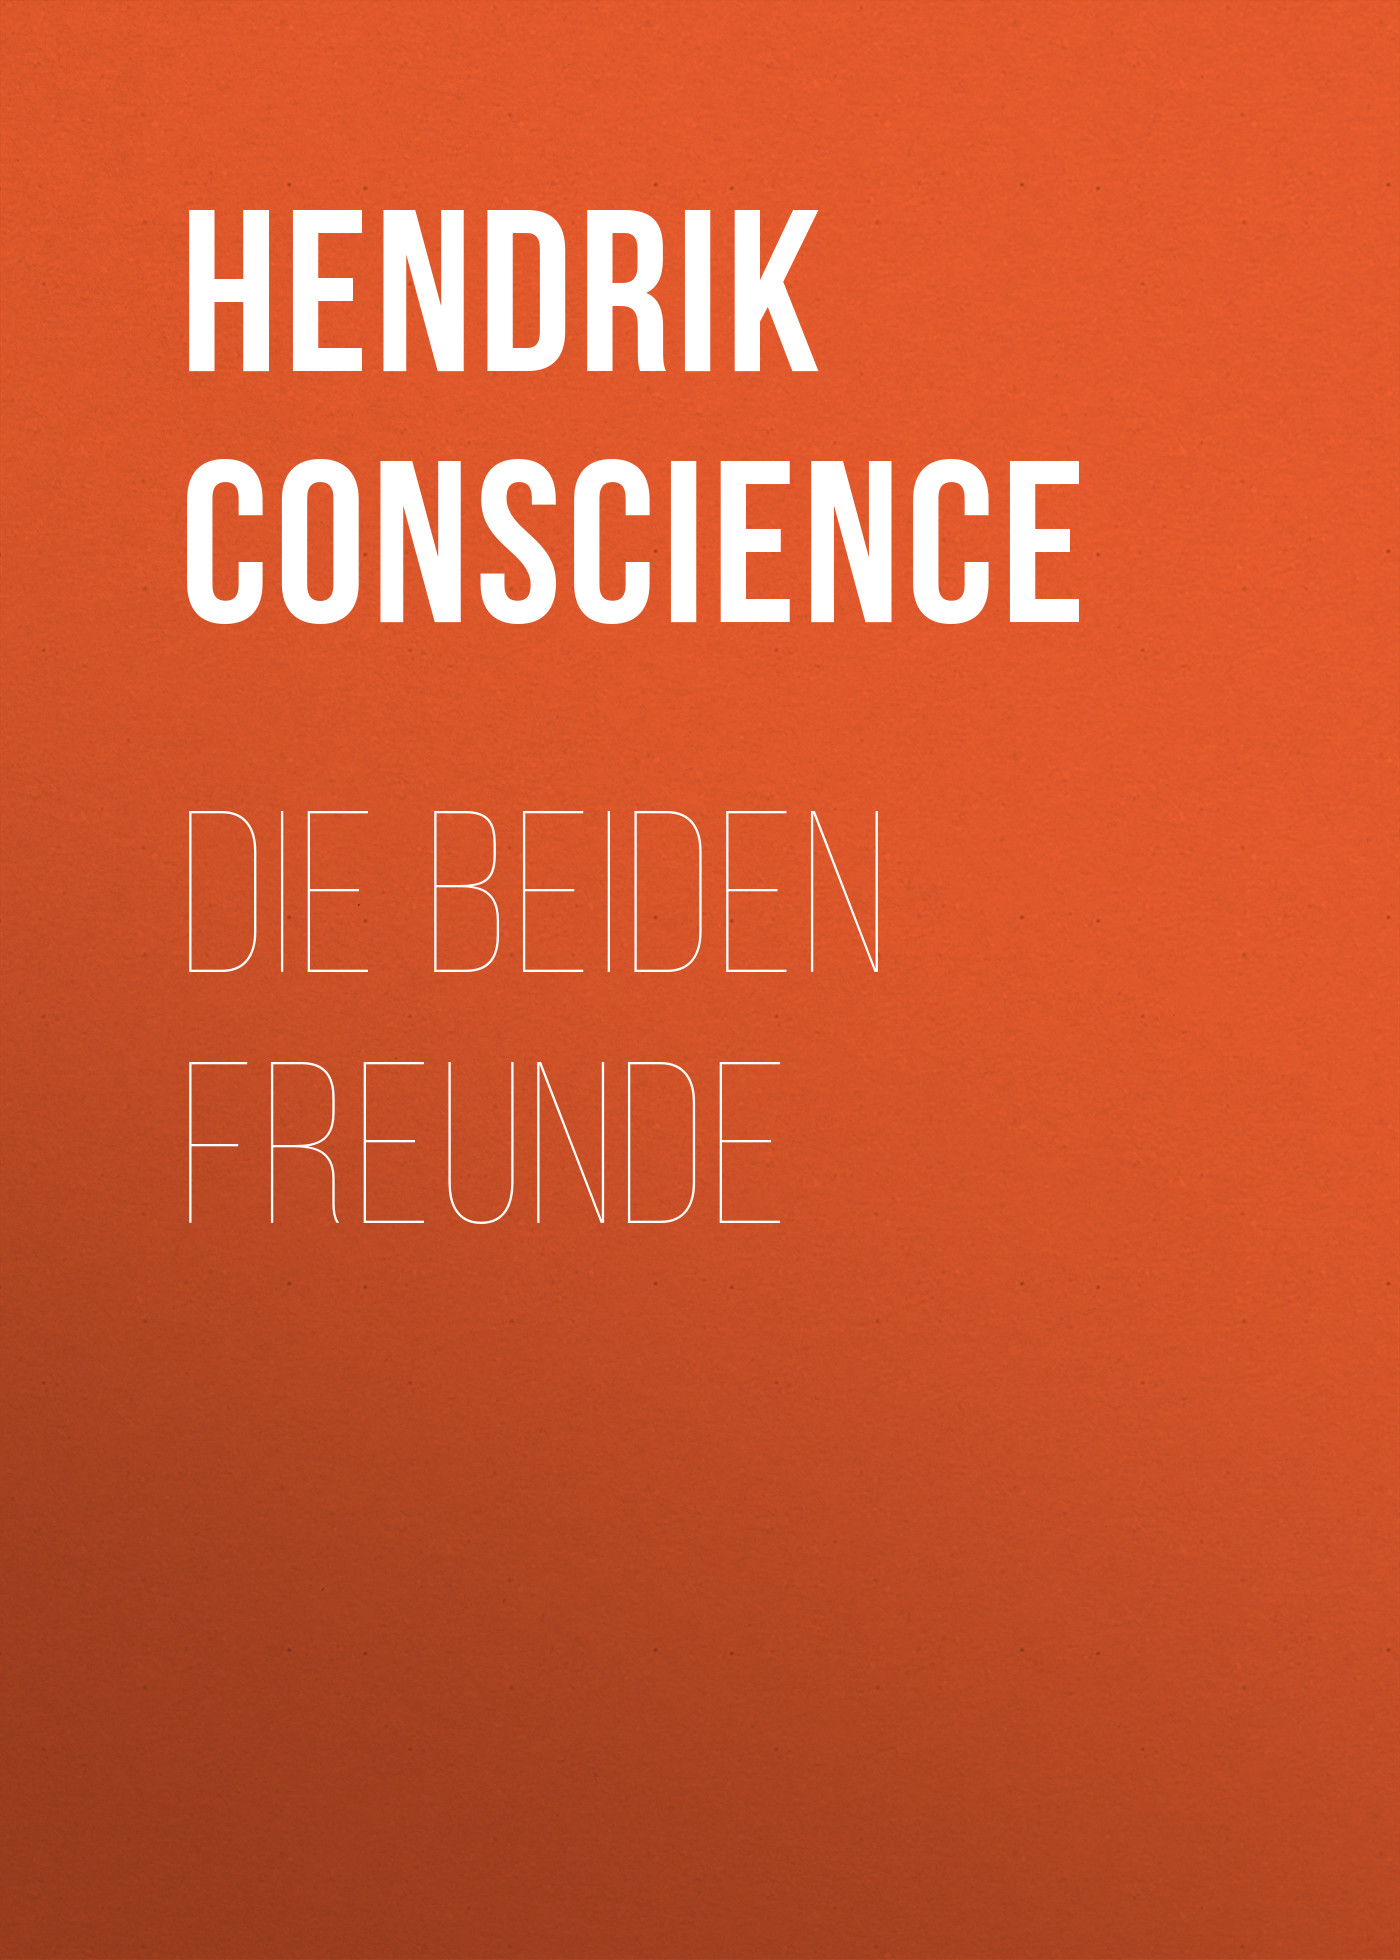 Книга Die beiden Freunde из серии , созданная Hendrik Conscience, может относится к жанру Зарубежная классика. Стоимость электронной книги Die beiden Freunde с идентификатором 48633476 составляет 0 руб.